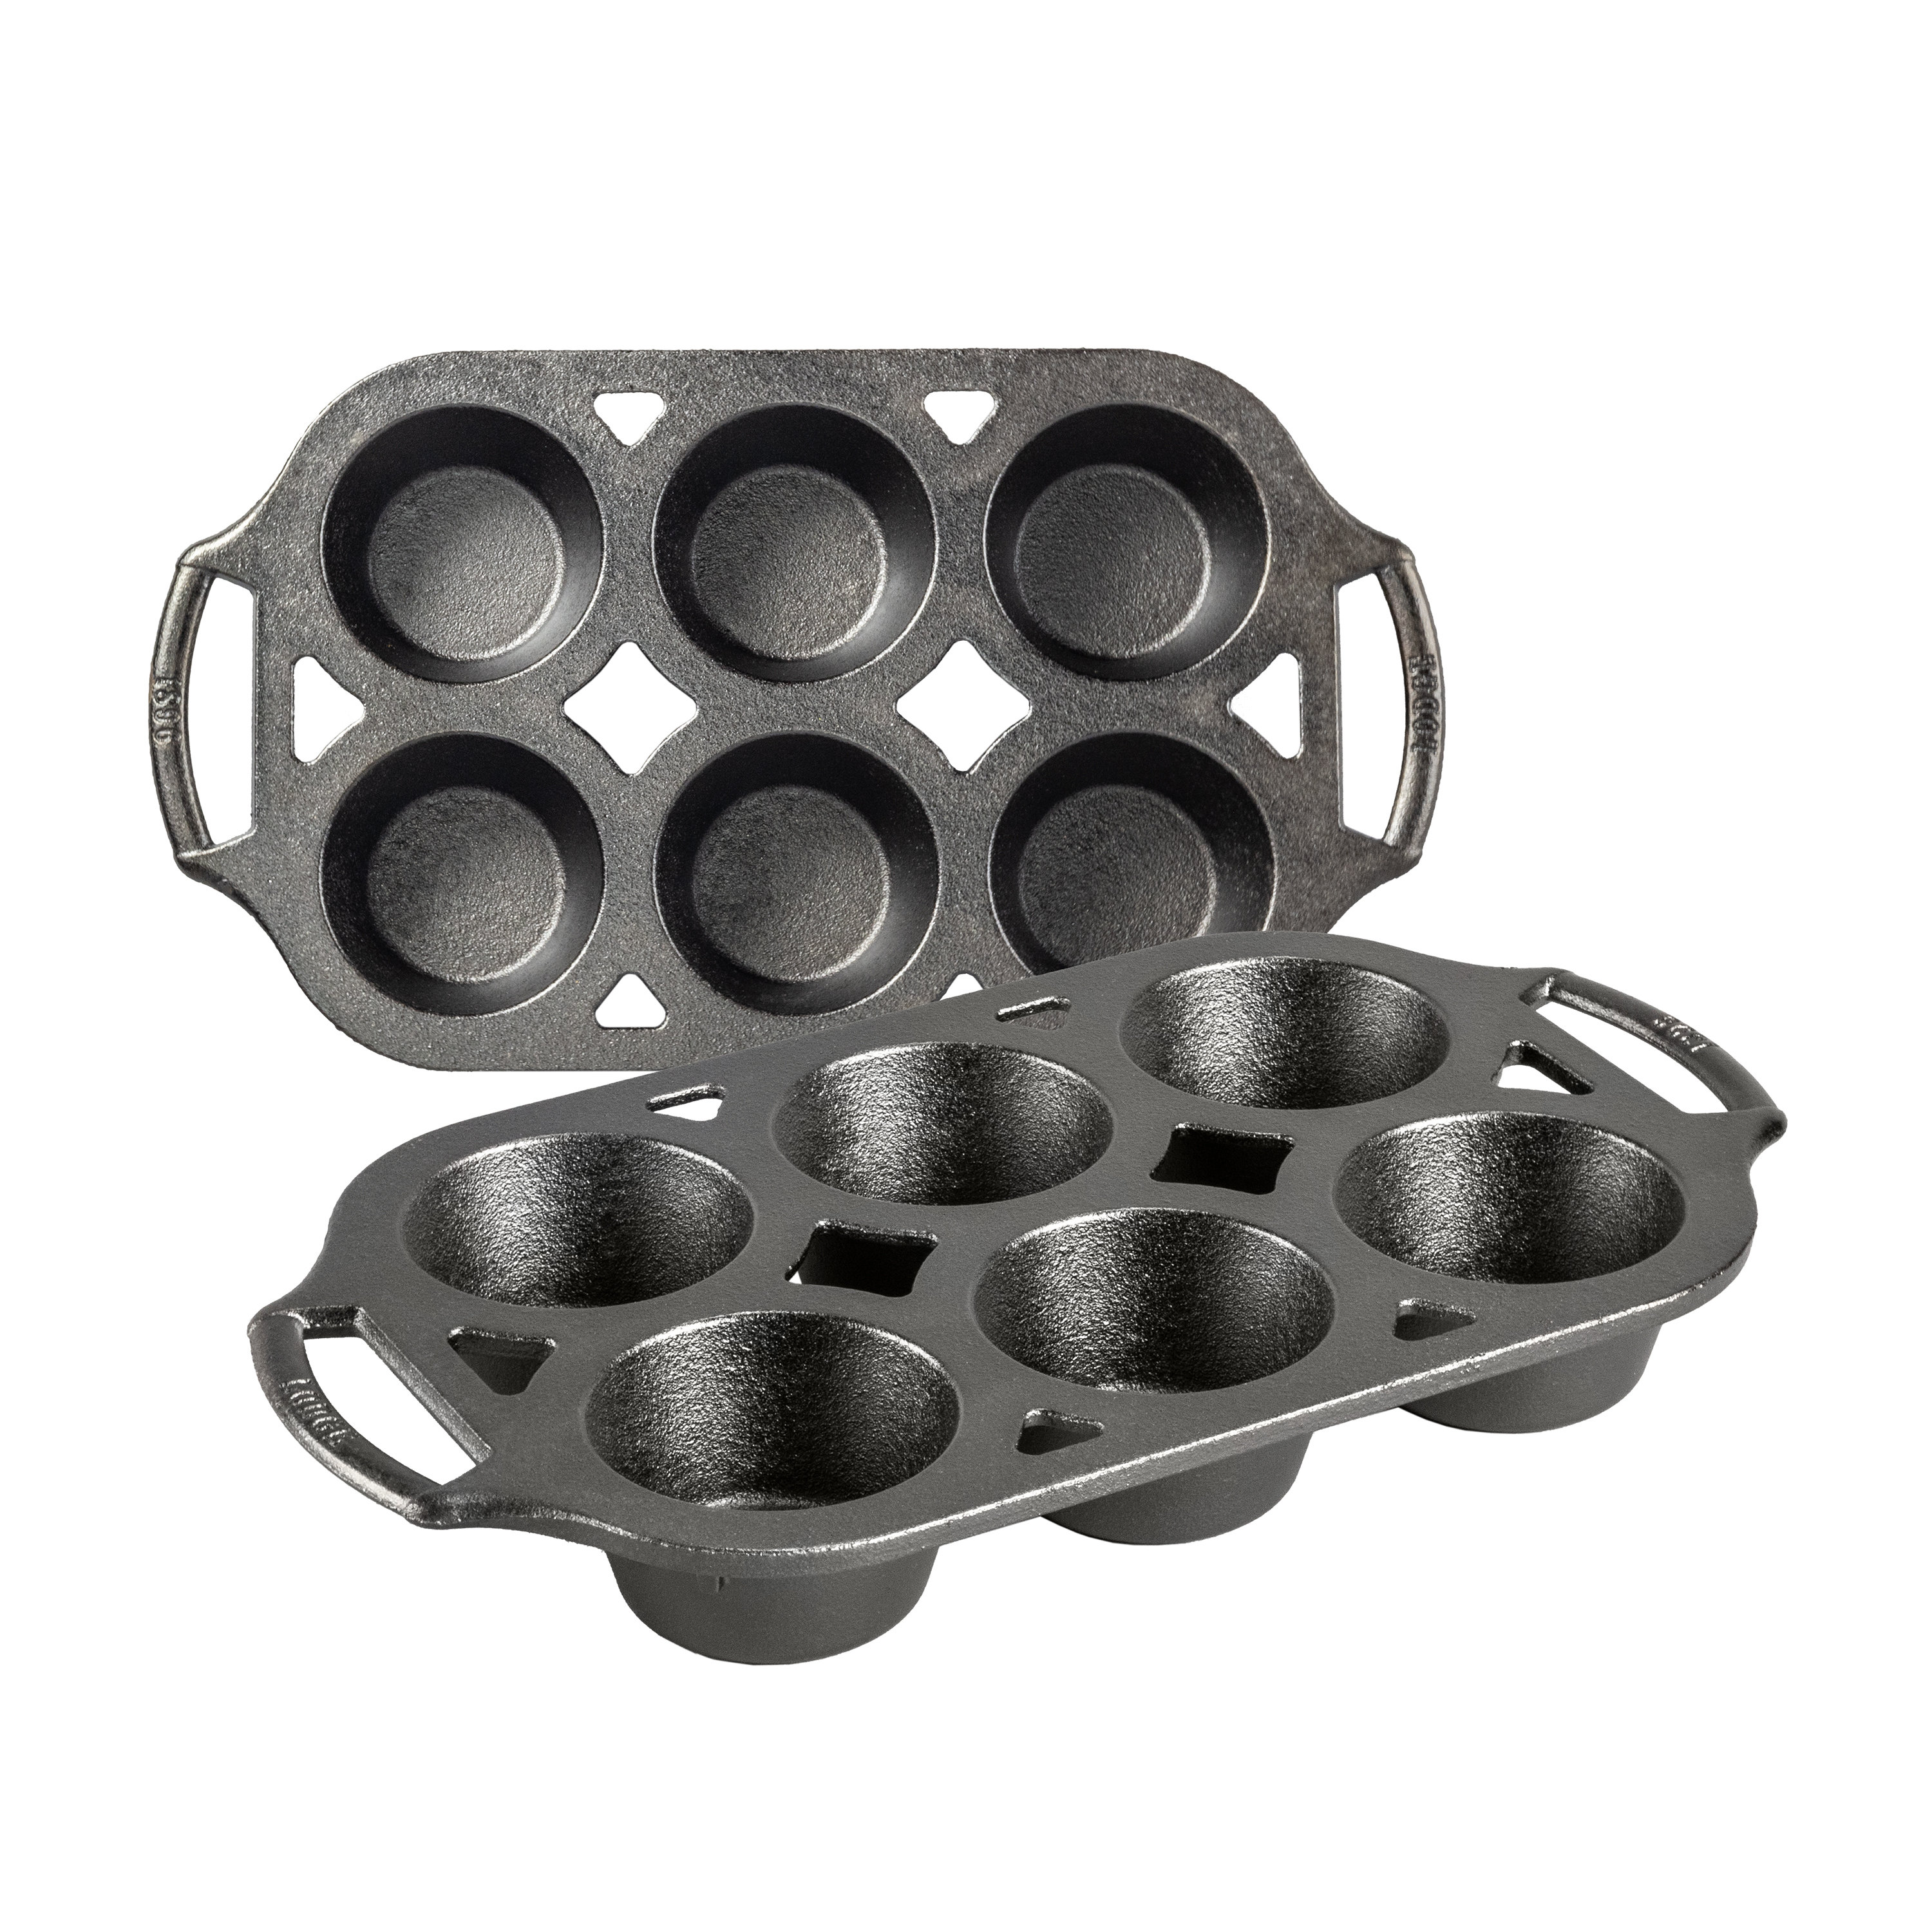 https://assets.wfcdn.com/im/94062647/compr-r85/2231/223129837/lodge-2-piece-cast-iron-muffin-pan-set.jpg